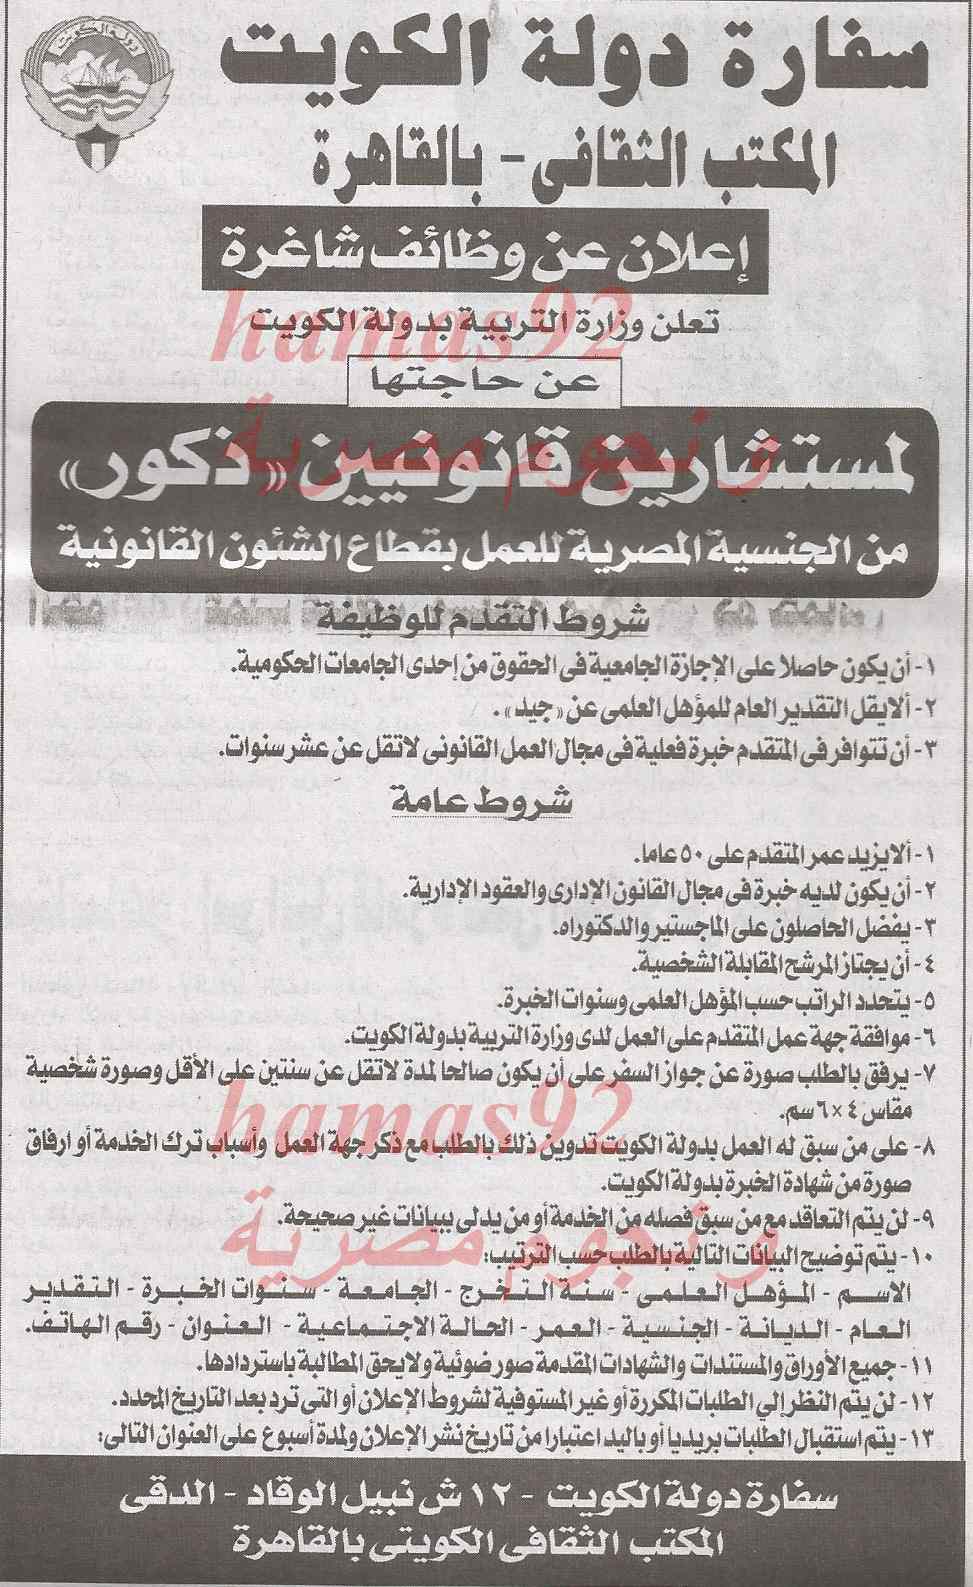 وظائف جريدة الاهرام اليوم الخميس 20-2-2014 , وظائف خالية اليوم 20 فبراير 2014